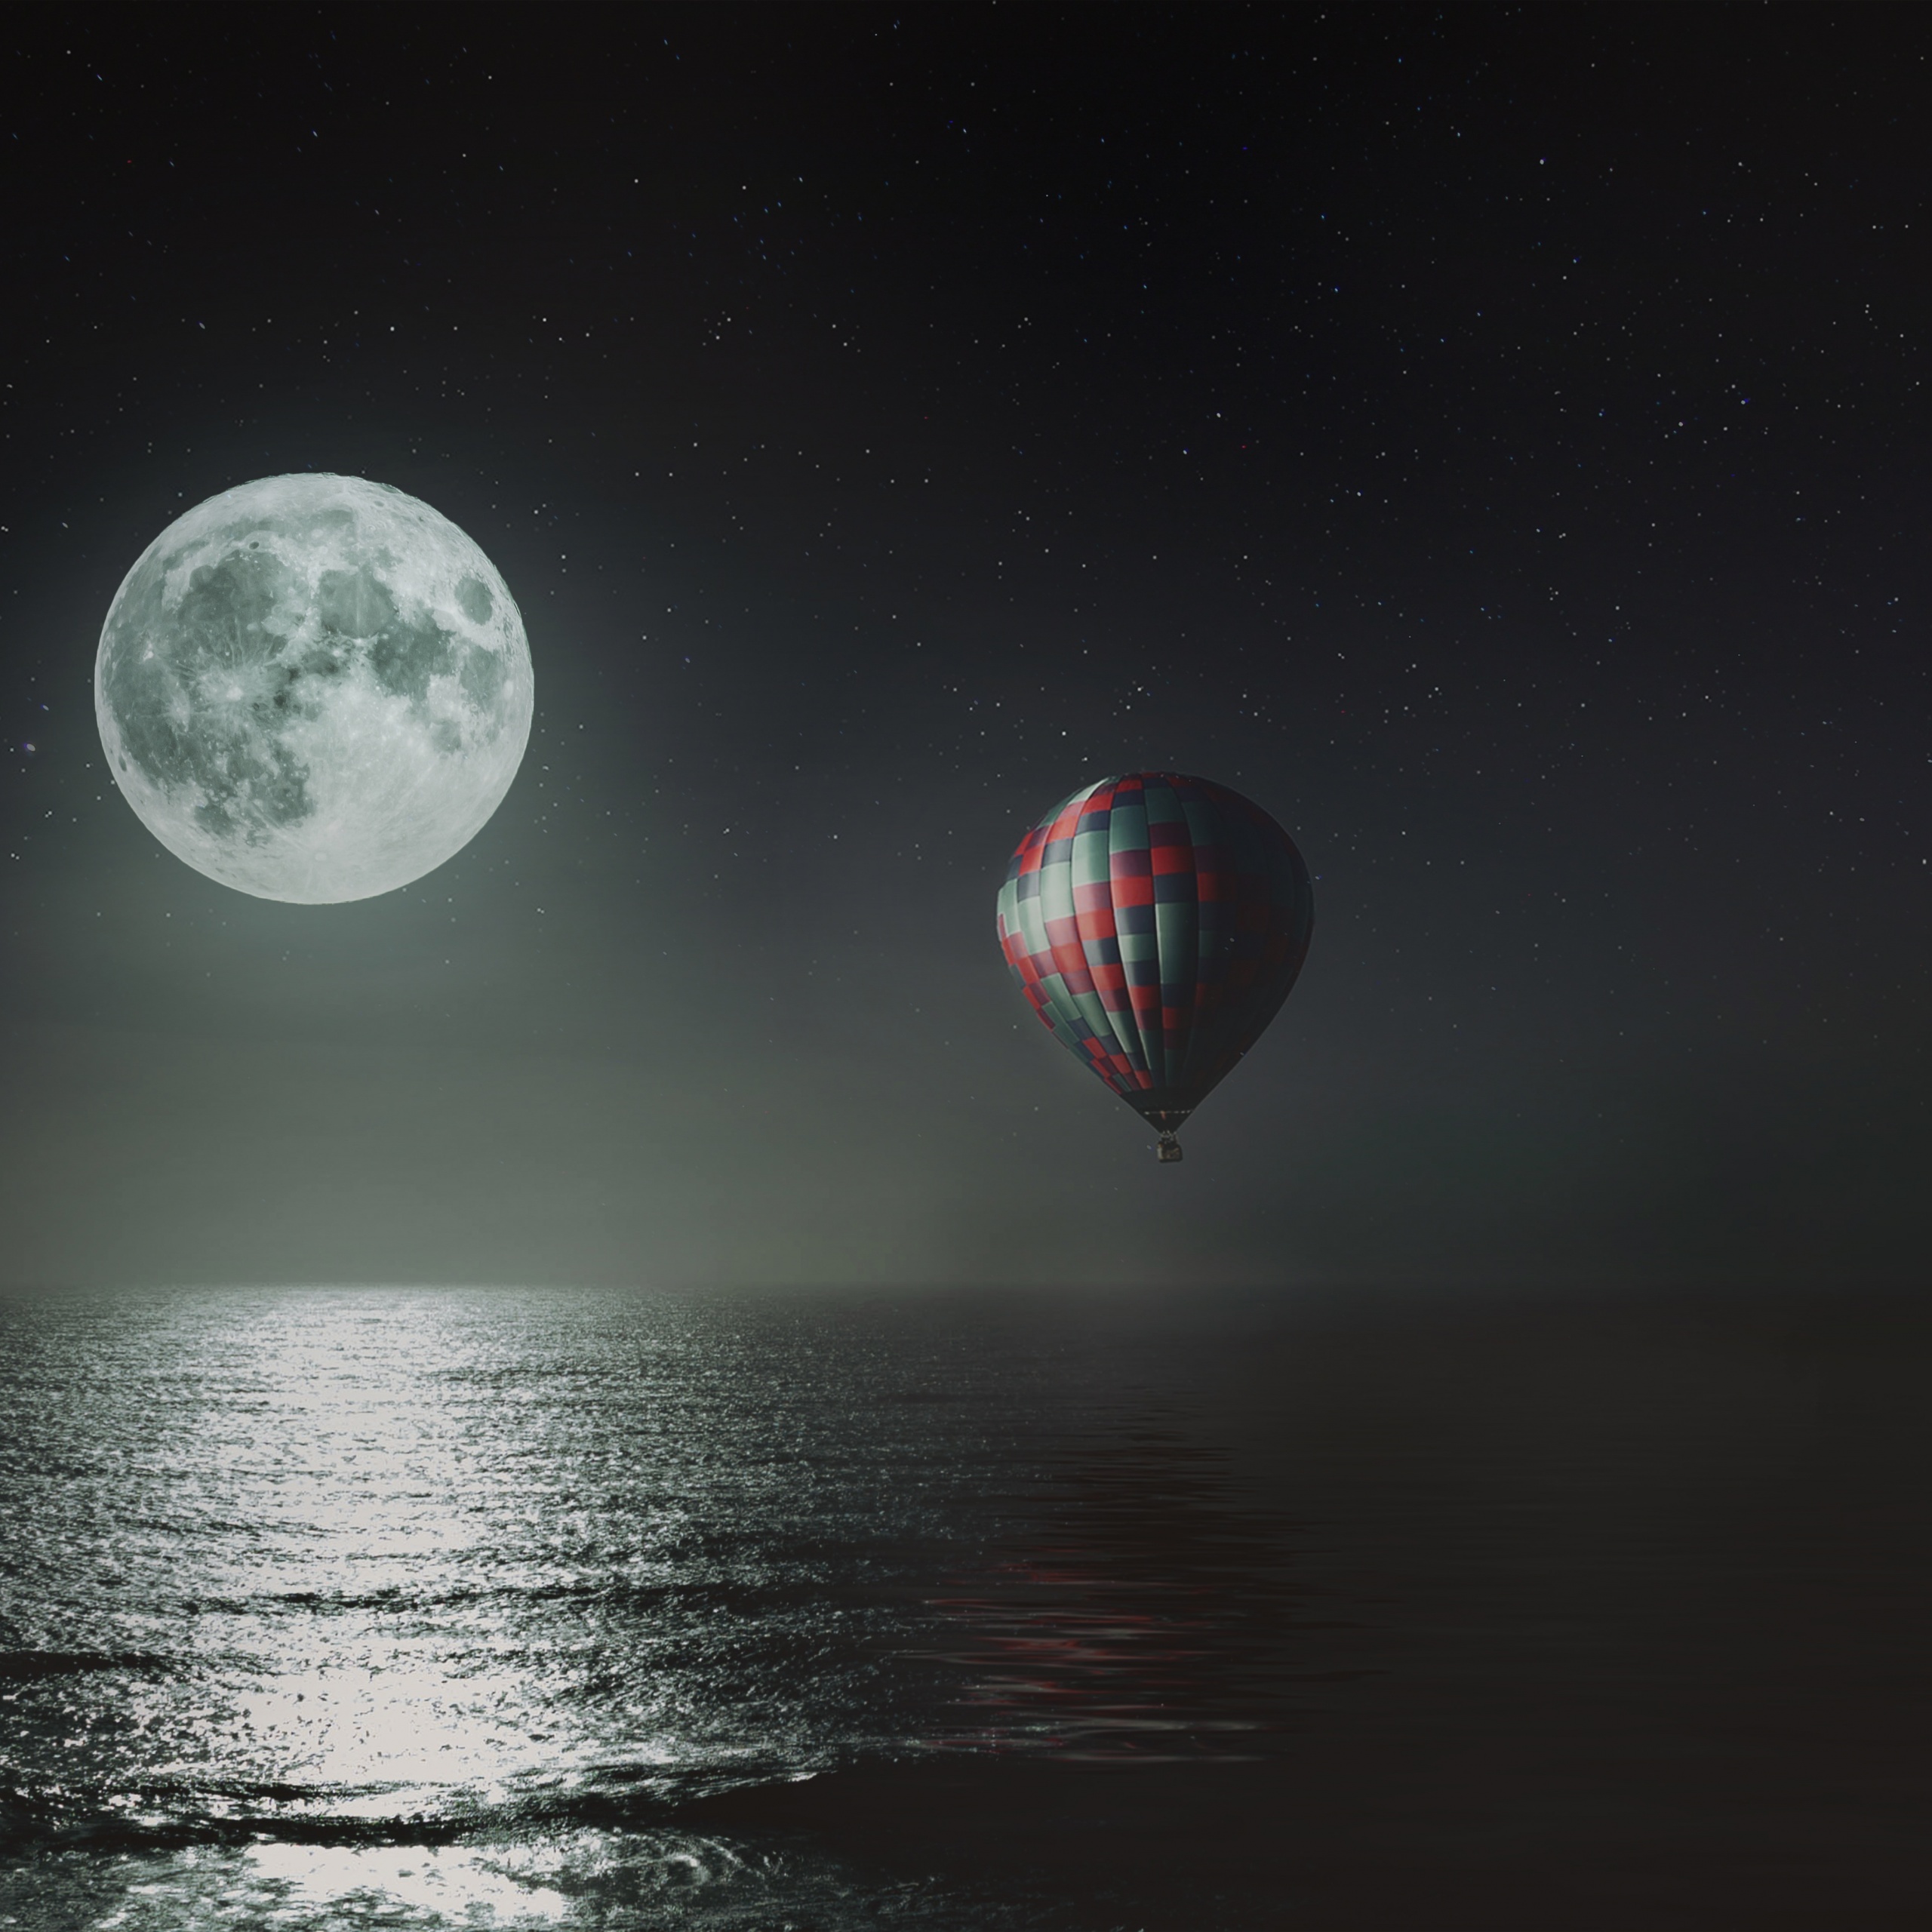 Hot air balloon Wallpaper 4K, Night, Full moon, Fantasy, #2409